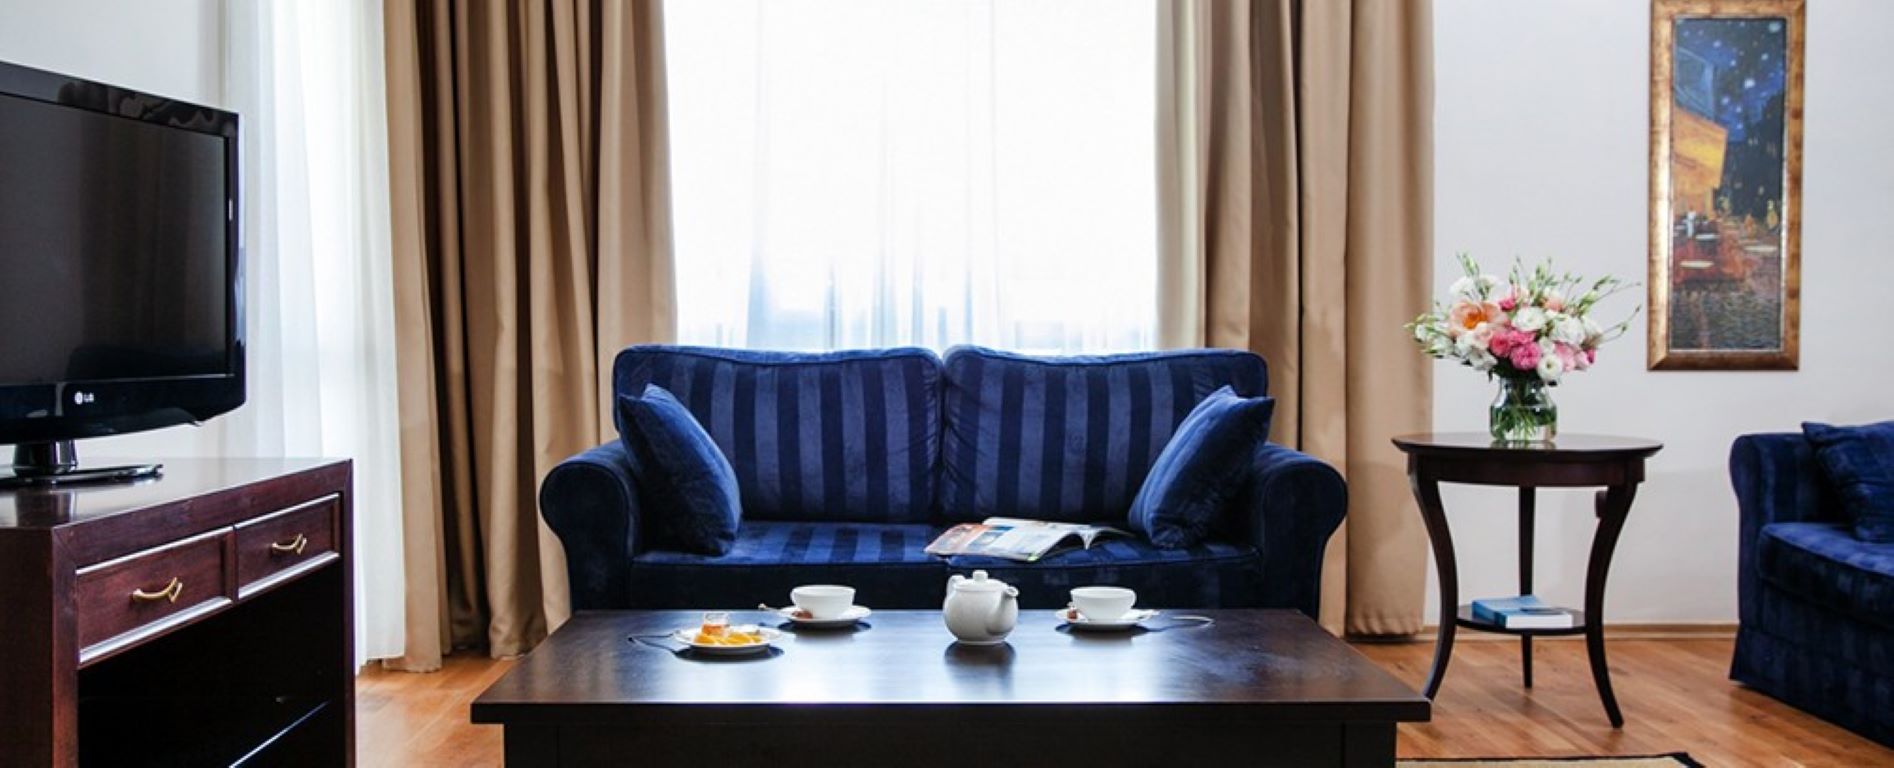 Premier luxury Resort - executive suite.jpg